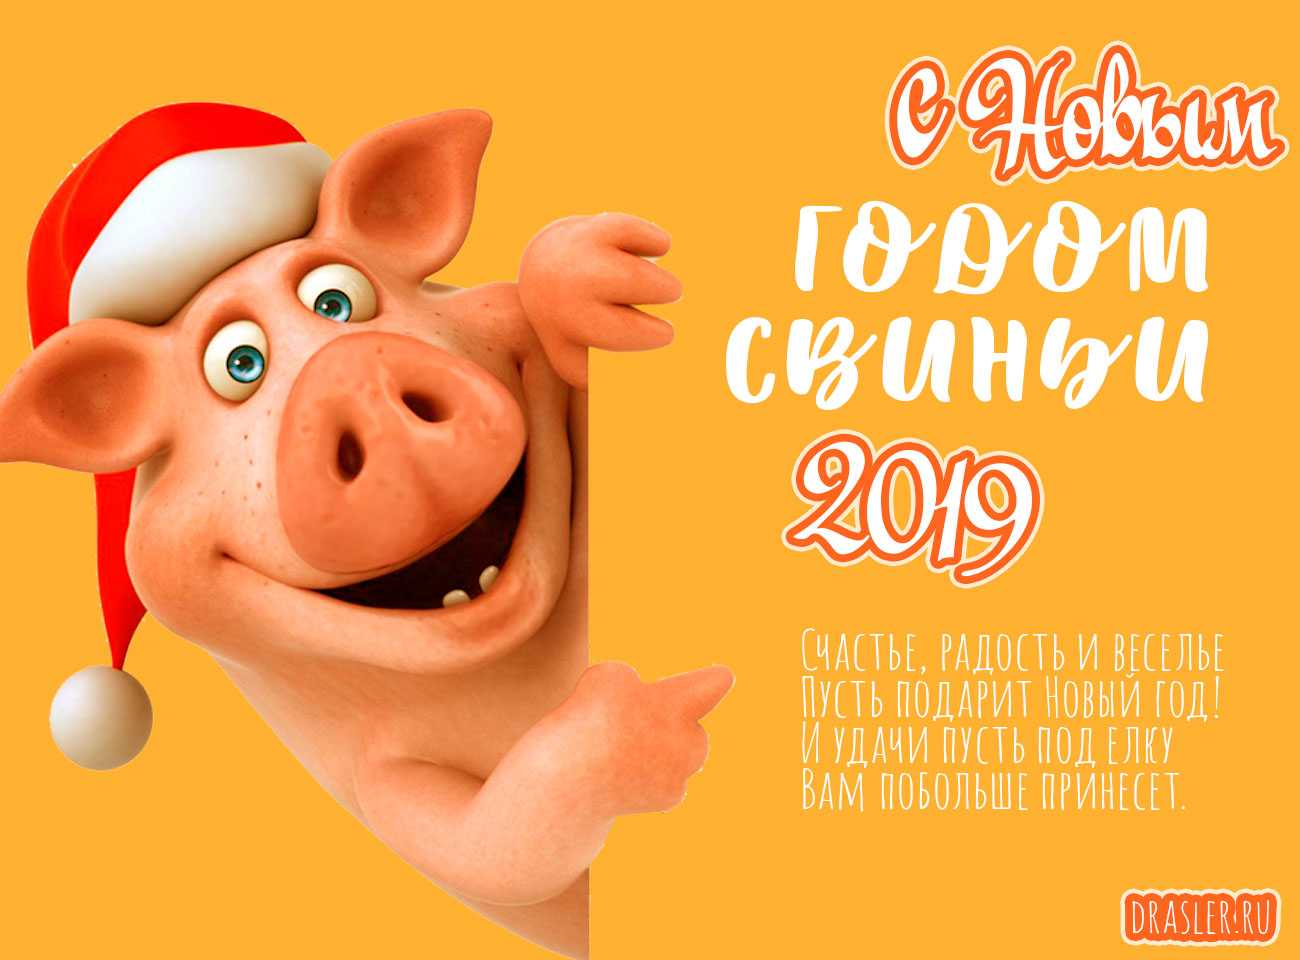 Как правильно встречать новый 2019 год свиньи